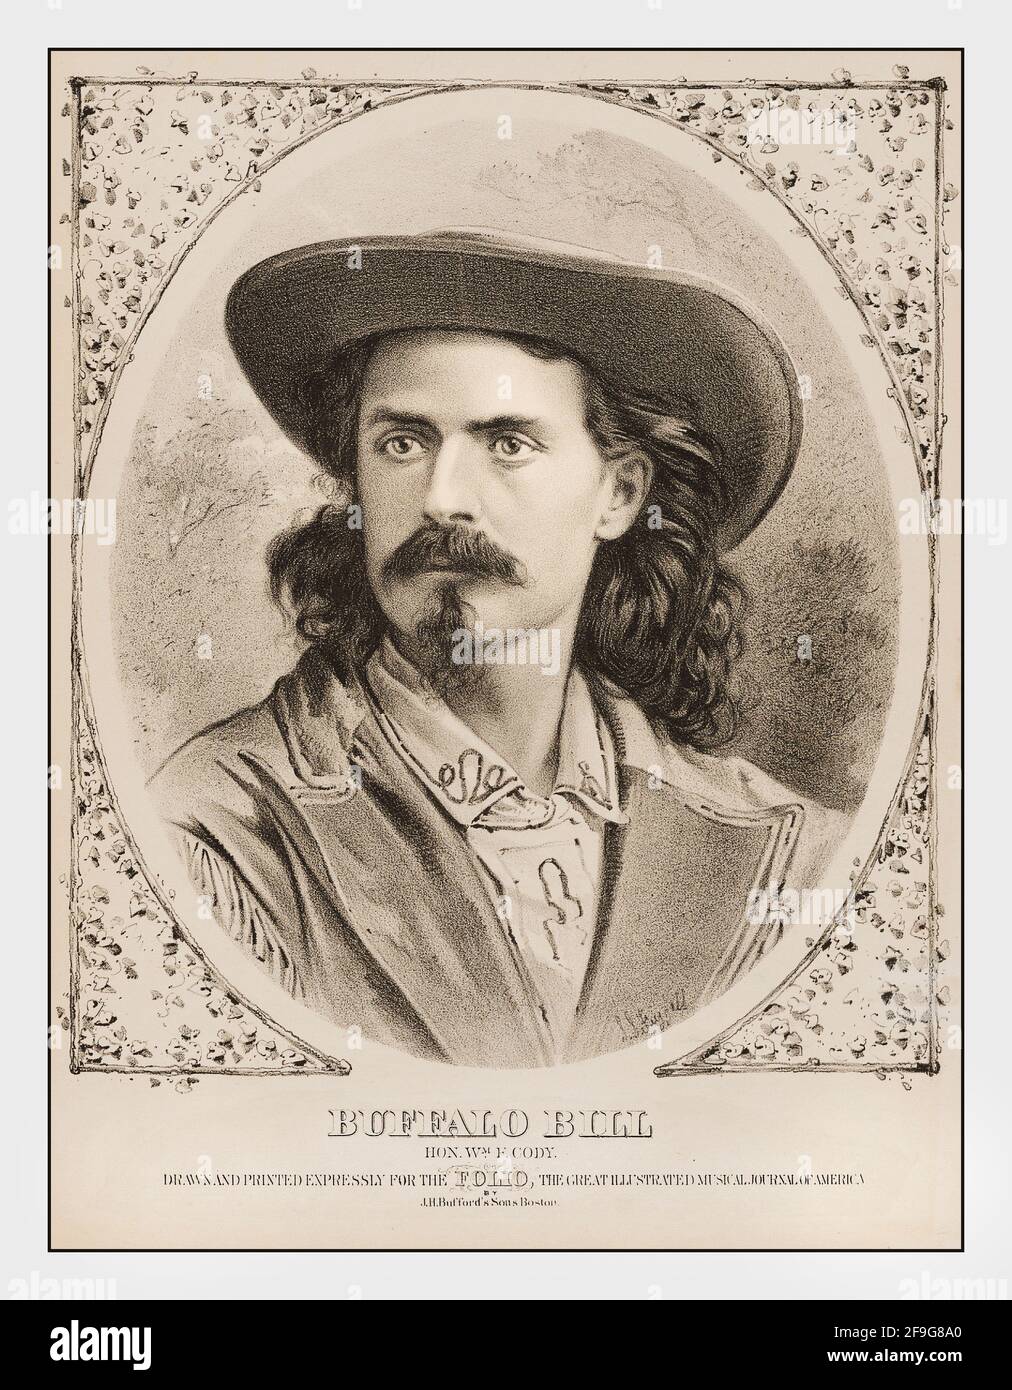 BUFFALO BILL Vintage 1860's Etching Print poster di Buffalo Bill William Frederick Cody. Conosciuto come Buffalo Bill, un frontiersman e showman americano Foto Stock